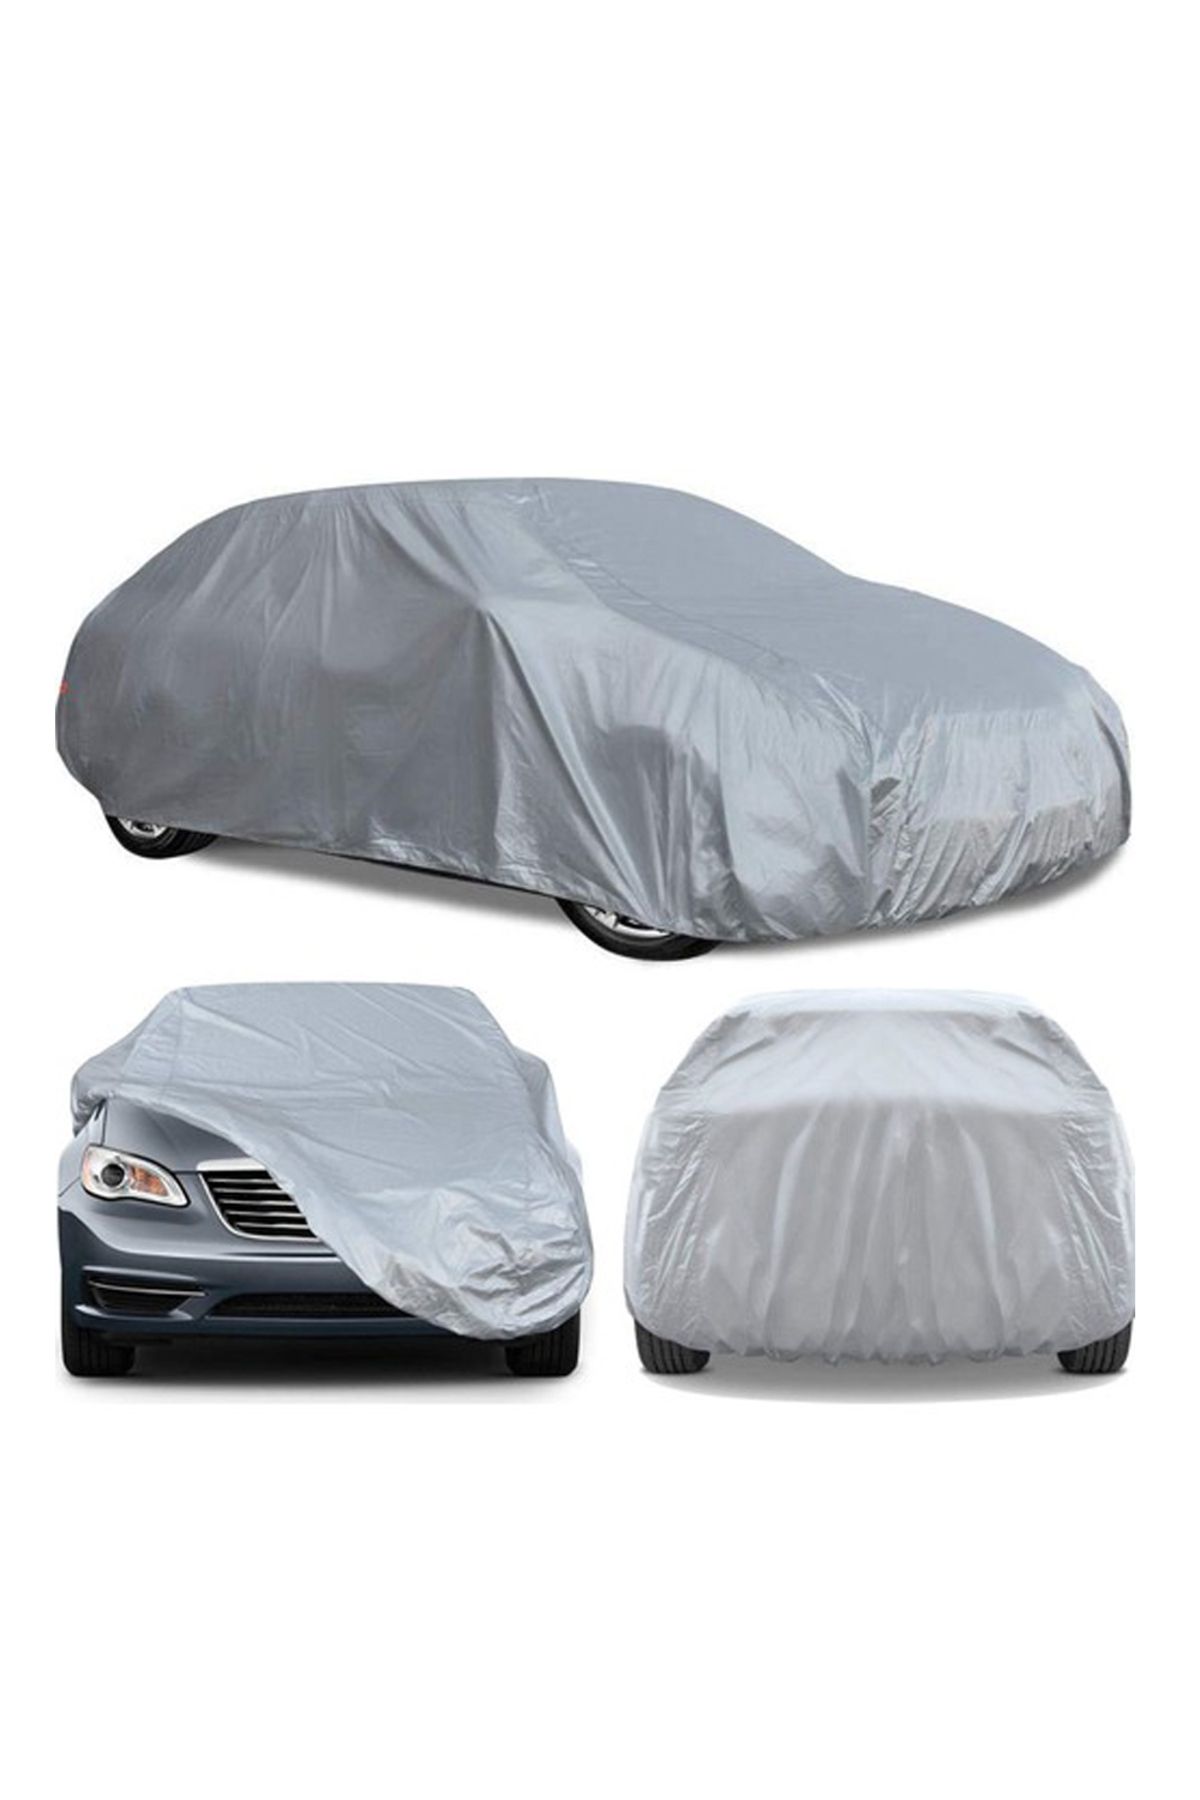 AutoZEL Chevrolet Spark Miflon Car Cover Waterproof (2005-2009